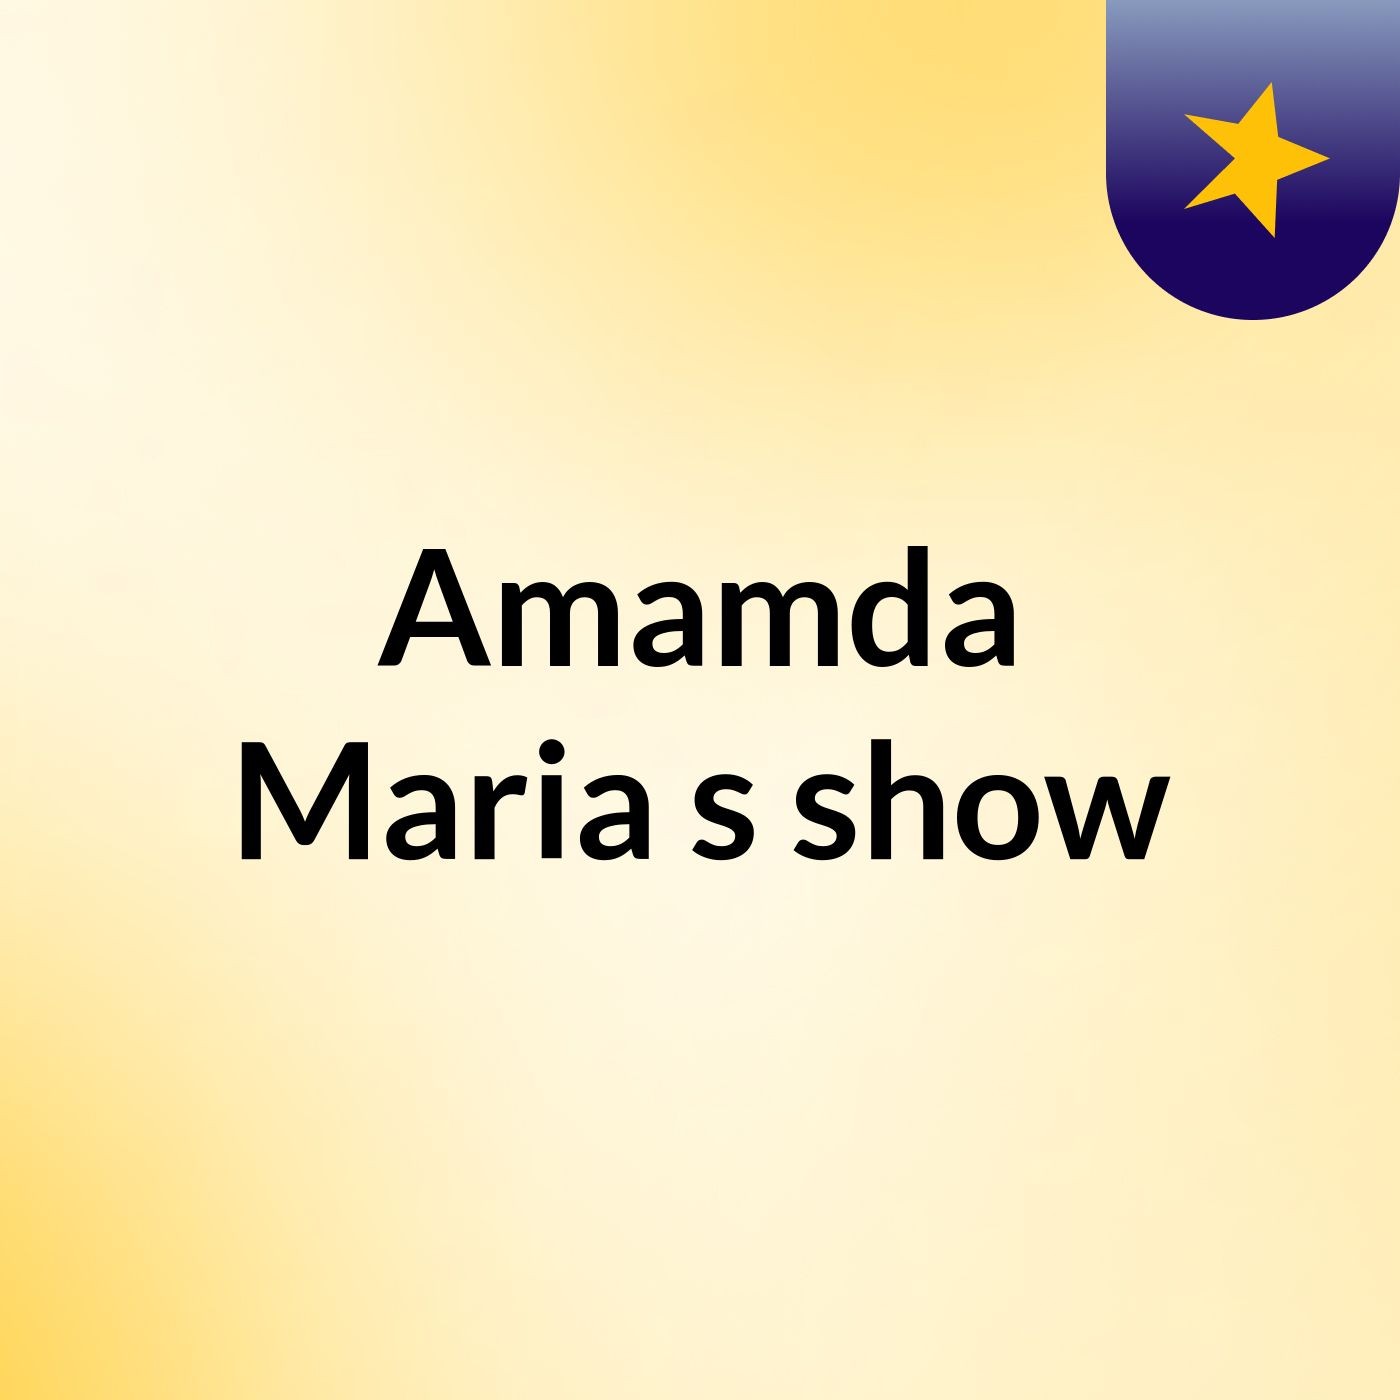 Amamda Maria's show